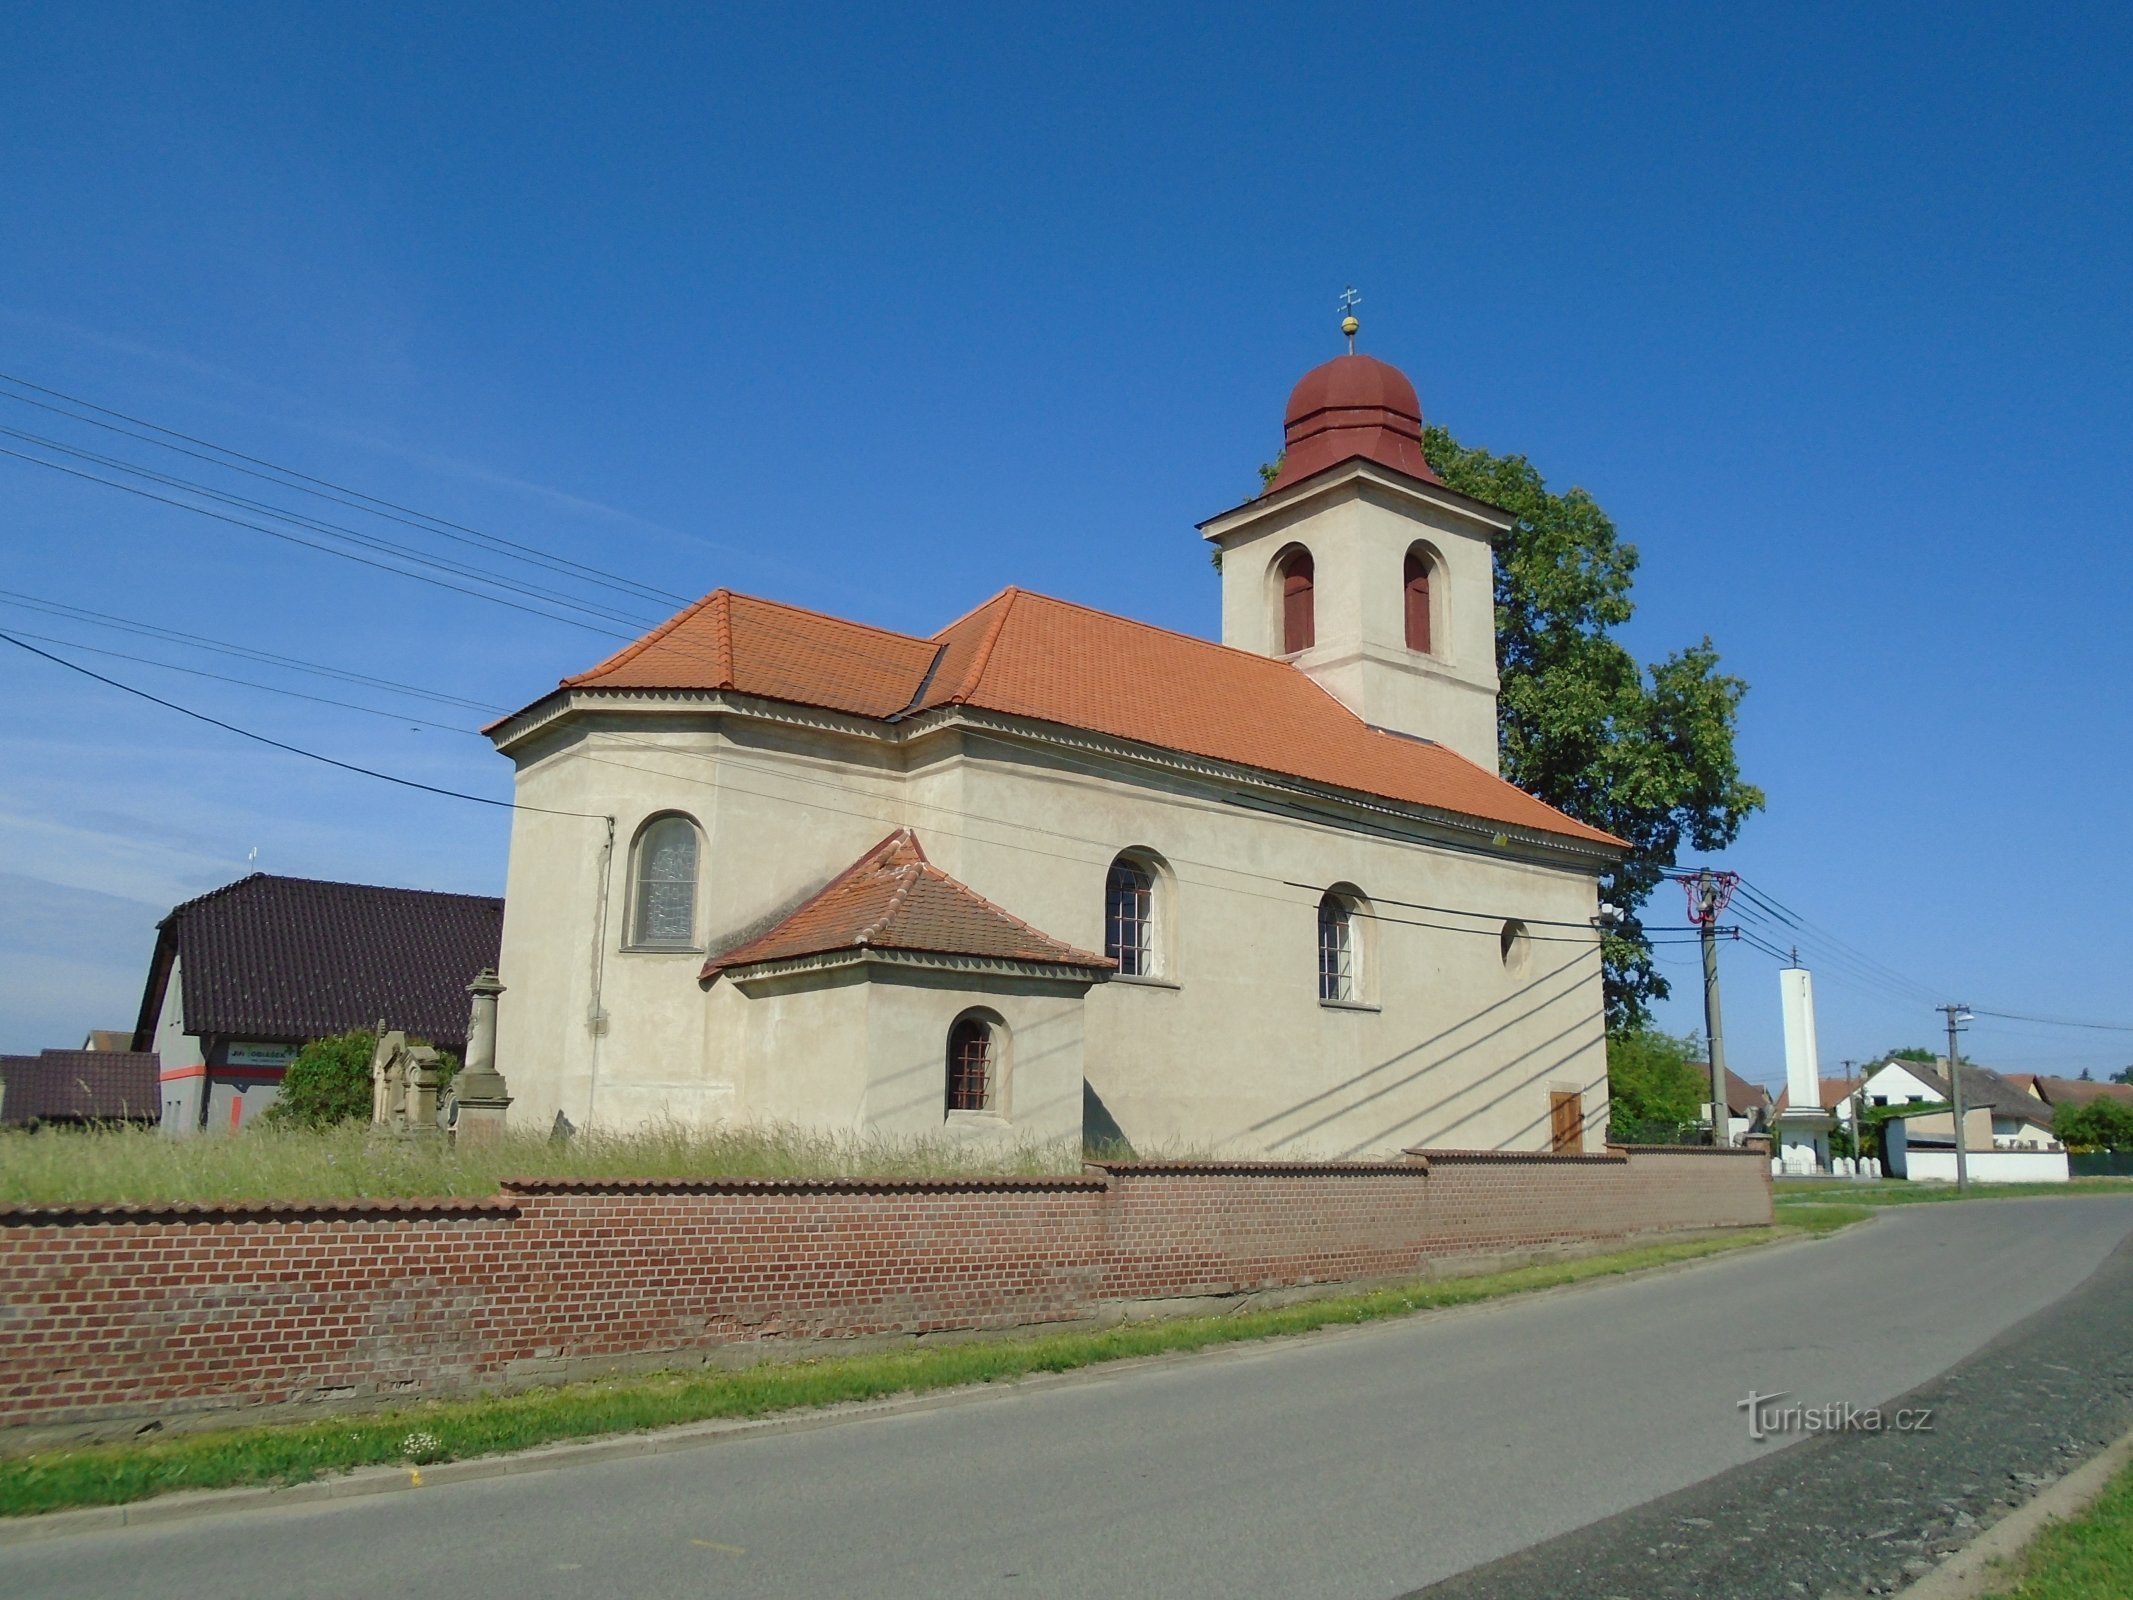 Den heliga treenighetens kyrka (Praskačka, 25.5.2018-XNUMX-XNUMX)